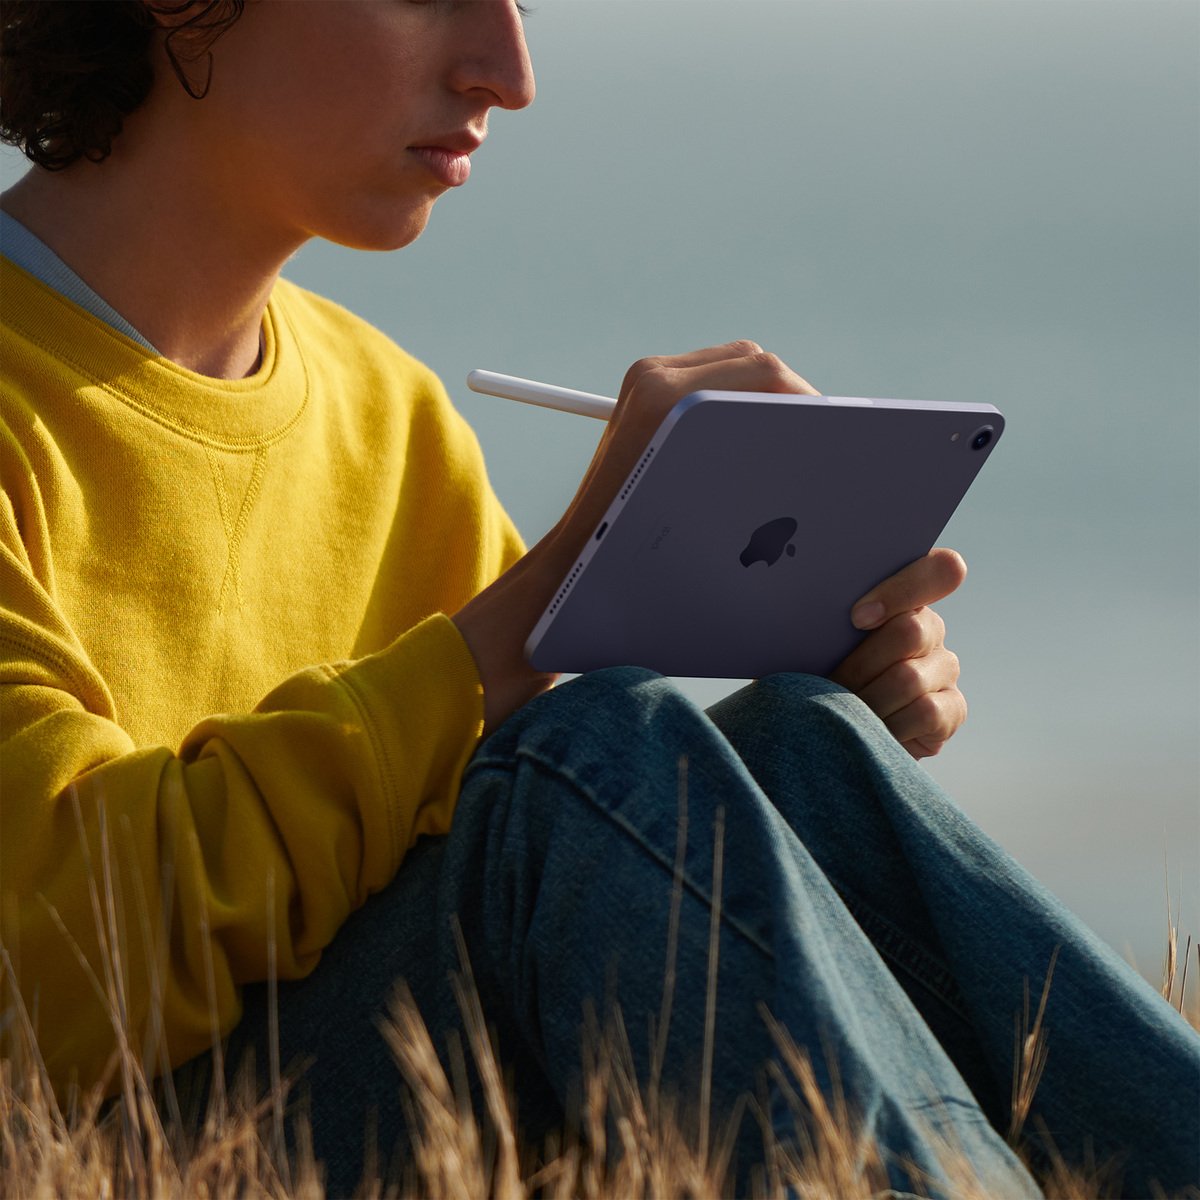 Apple iPad mini 2021 (6th Generation) 8.3-inch, Wi-Fi, 64GB - Purple Online  at Best Price | Tablets | Lulu Qatar